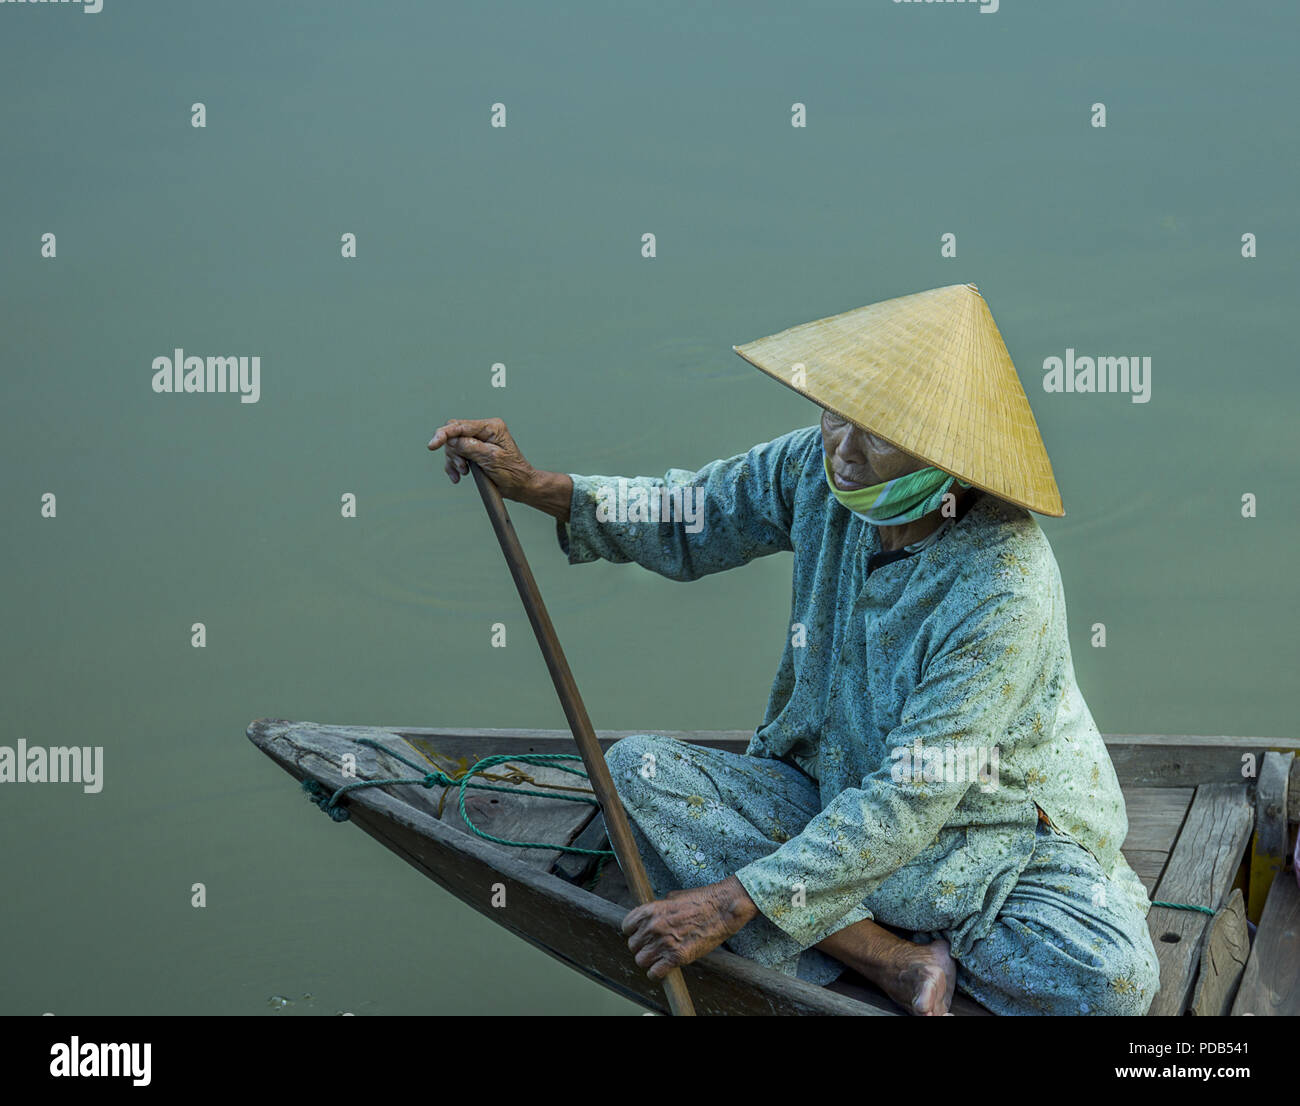 Madame asiatique en chaloupe dans un livre vert monochrome sauf pour le  beige claire chapeau conique. An Vietnam Photo Stock - Alamy